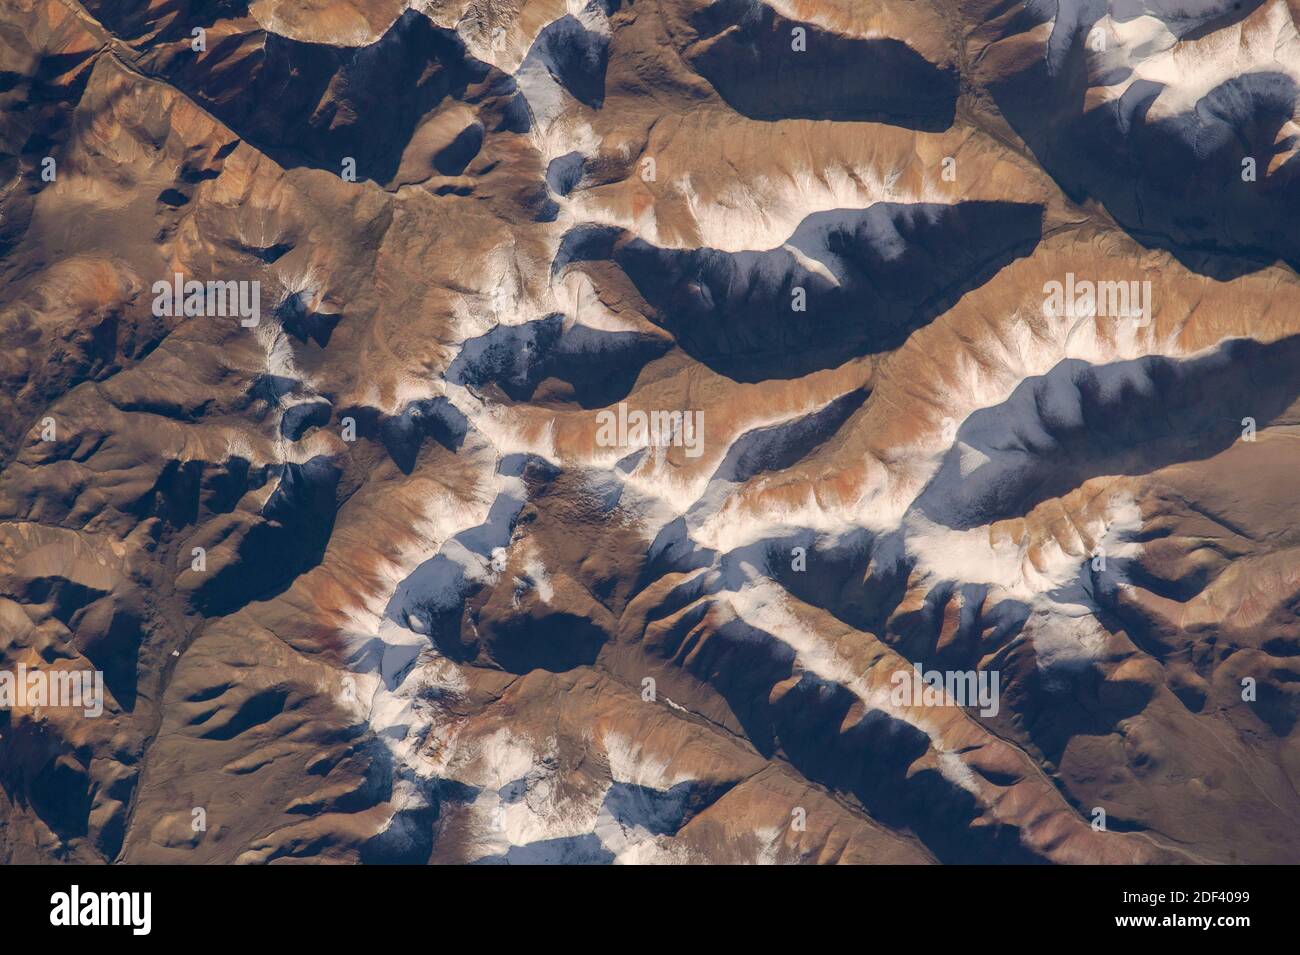 SÜDASIEN - 07. August 2015 - NASA-Astronaut Scott Kelly hat an Bord der Internationalen Raumstation dieses interessante Bild der Himalaya-Dur gemacht Stockfoto